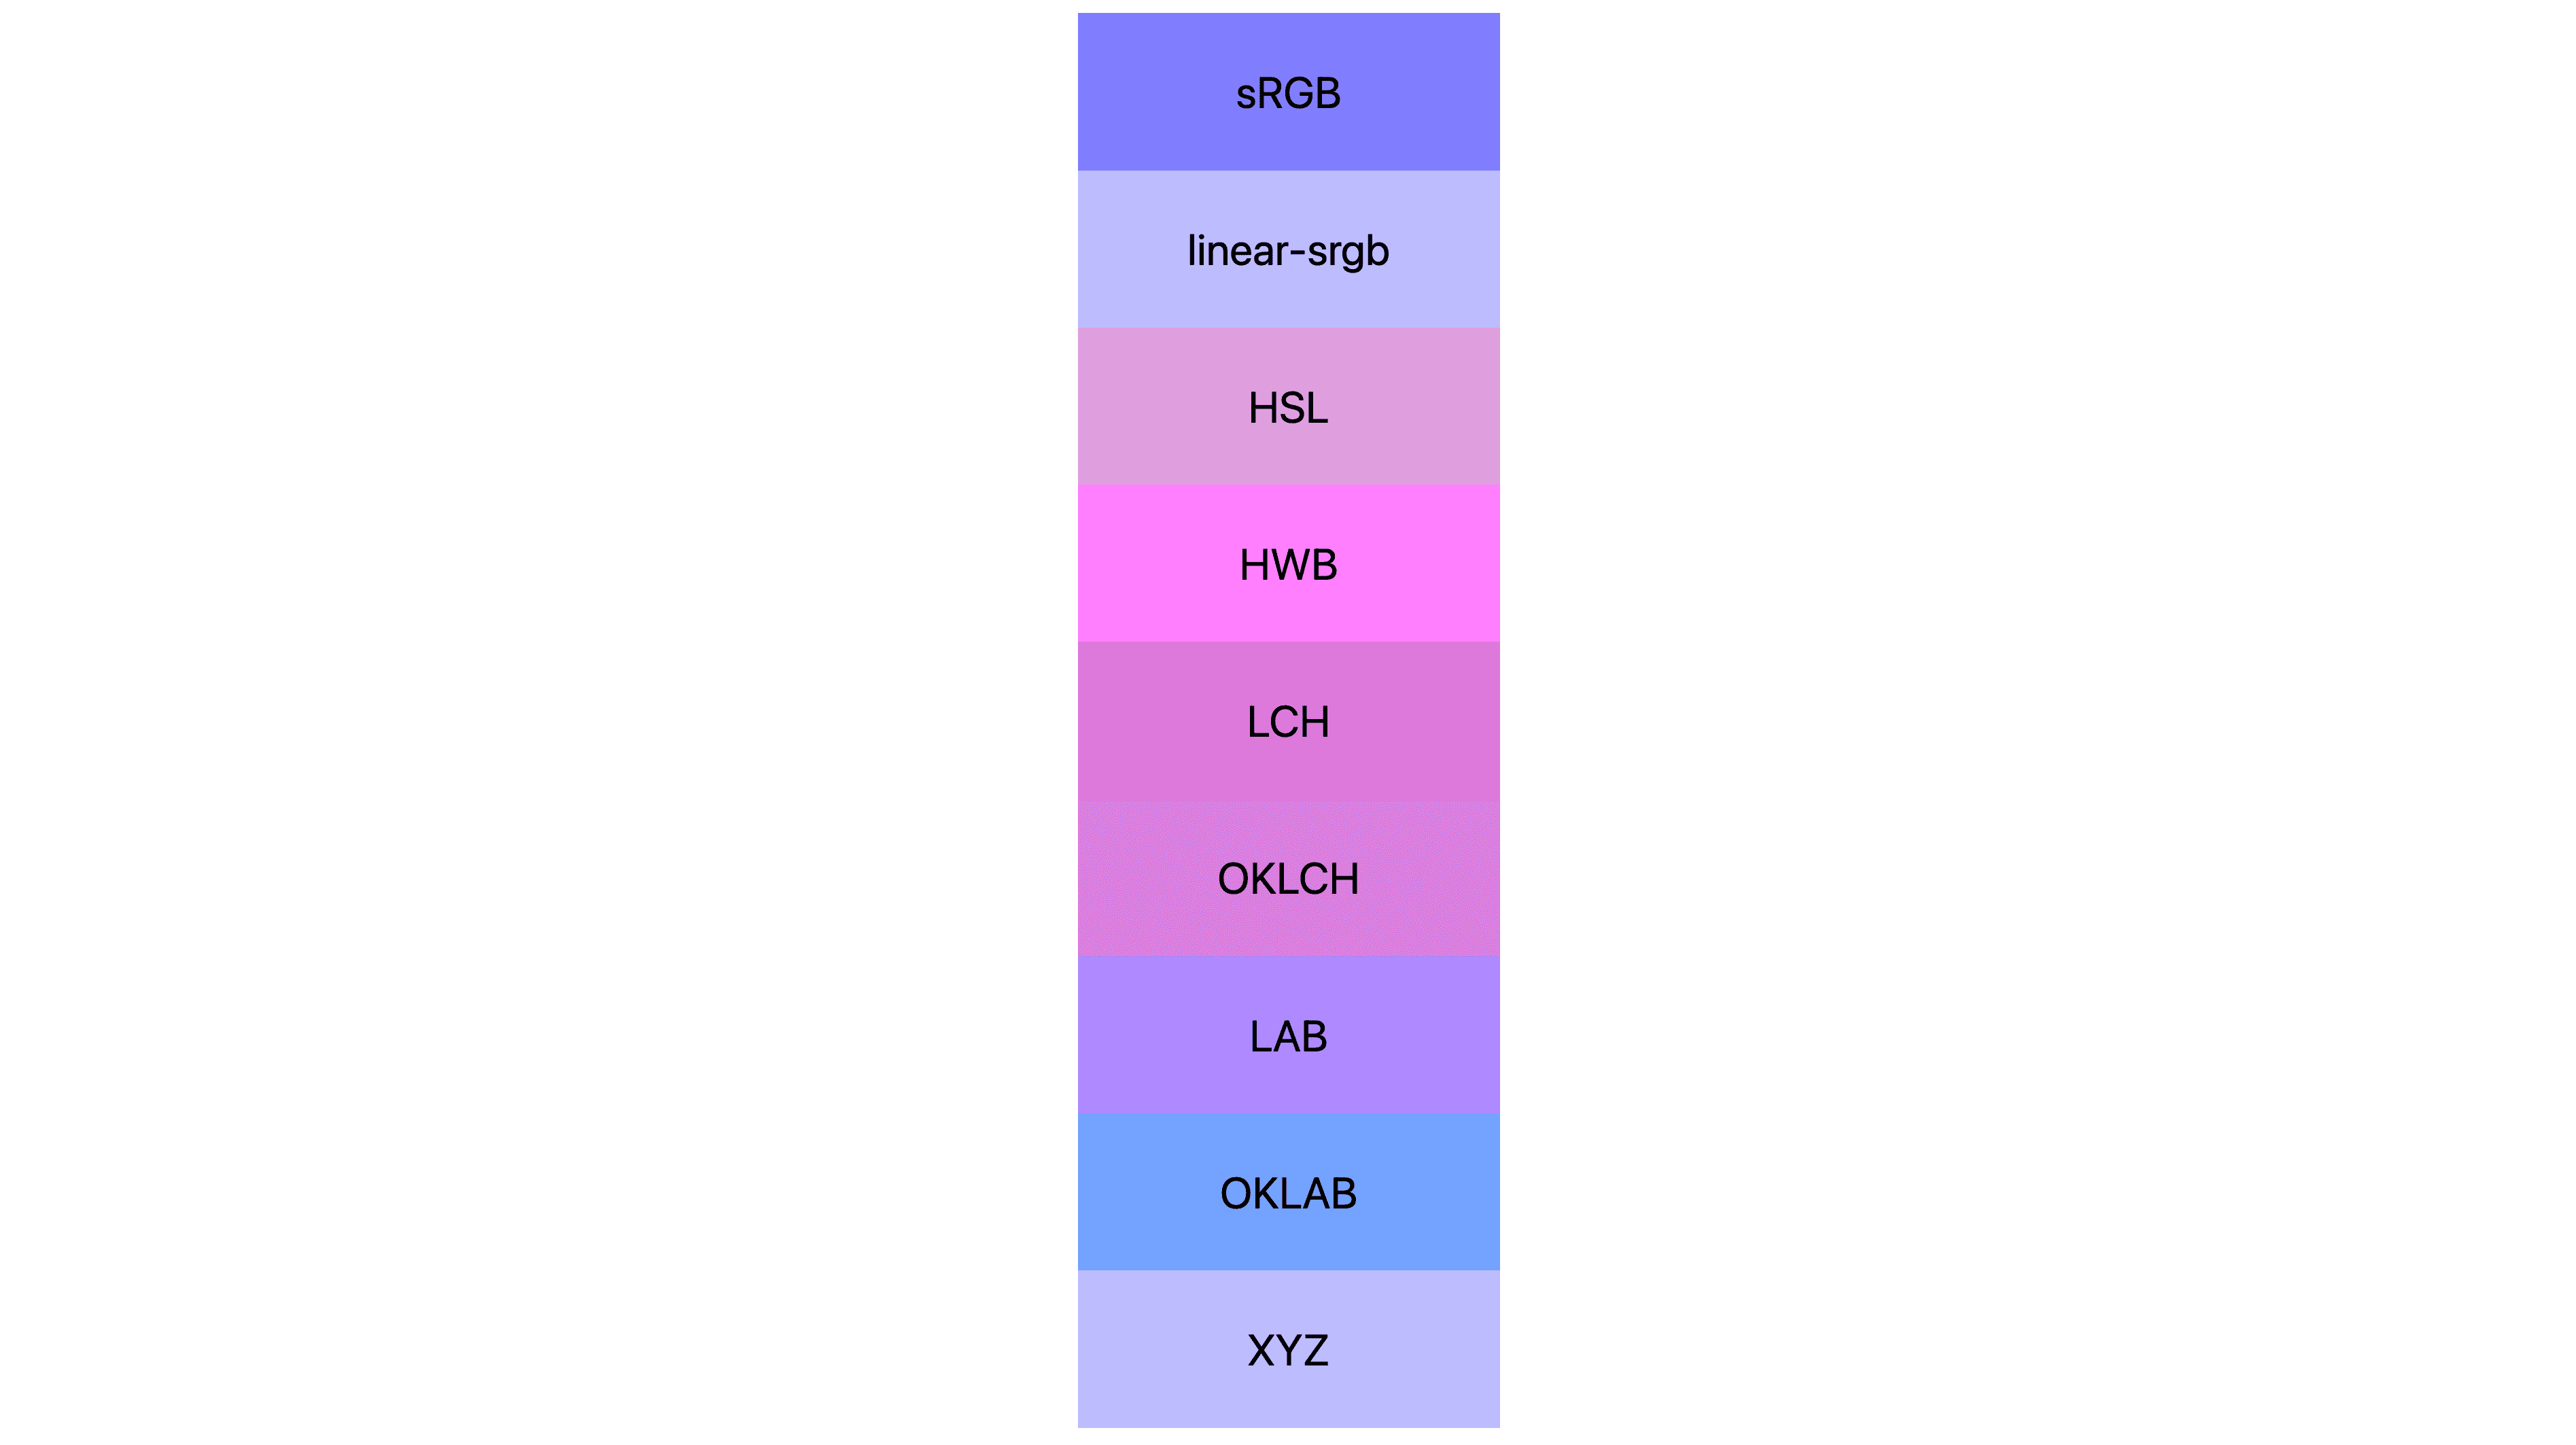 7 spazi colore (silizza, linear-sgsuite, lch, oklch, lab, oklab, xyz) con risultati diversi. Molti sono rosa o viola, altri ancora blu.